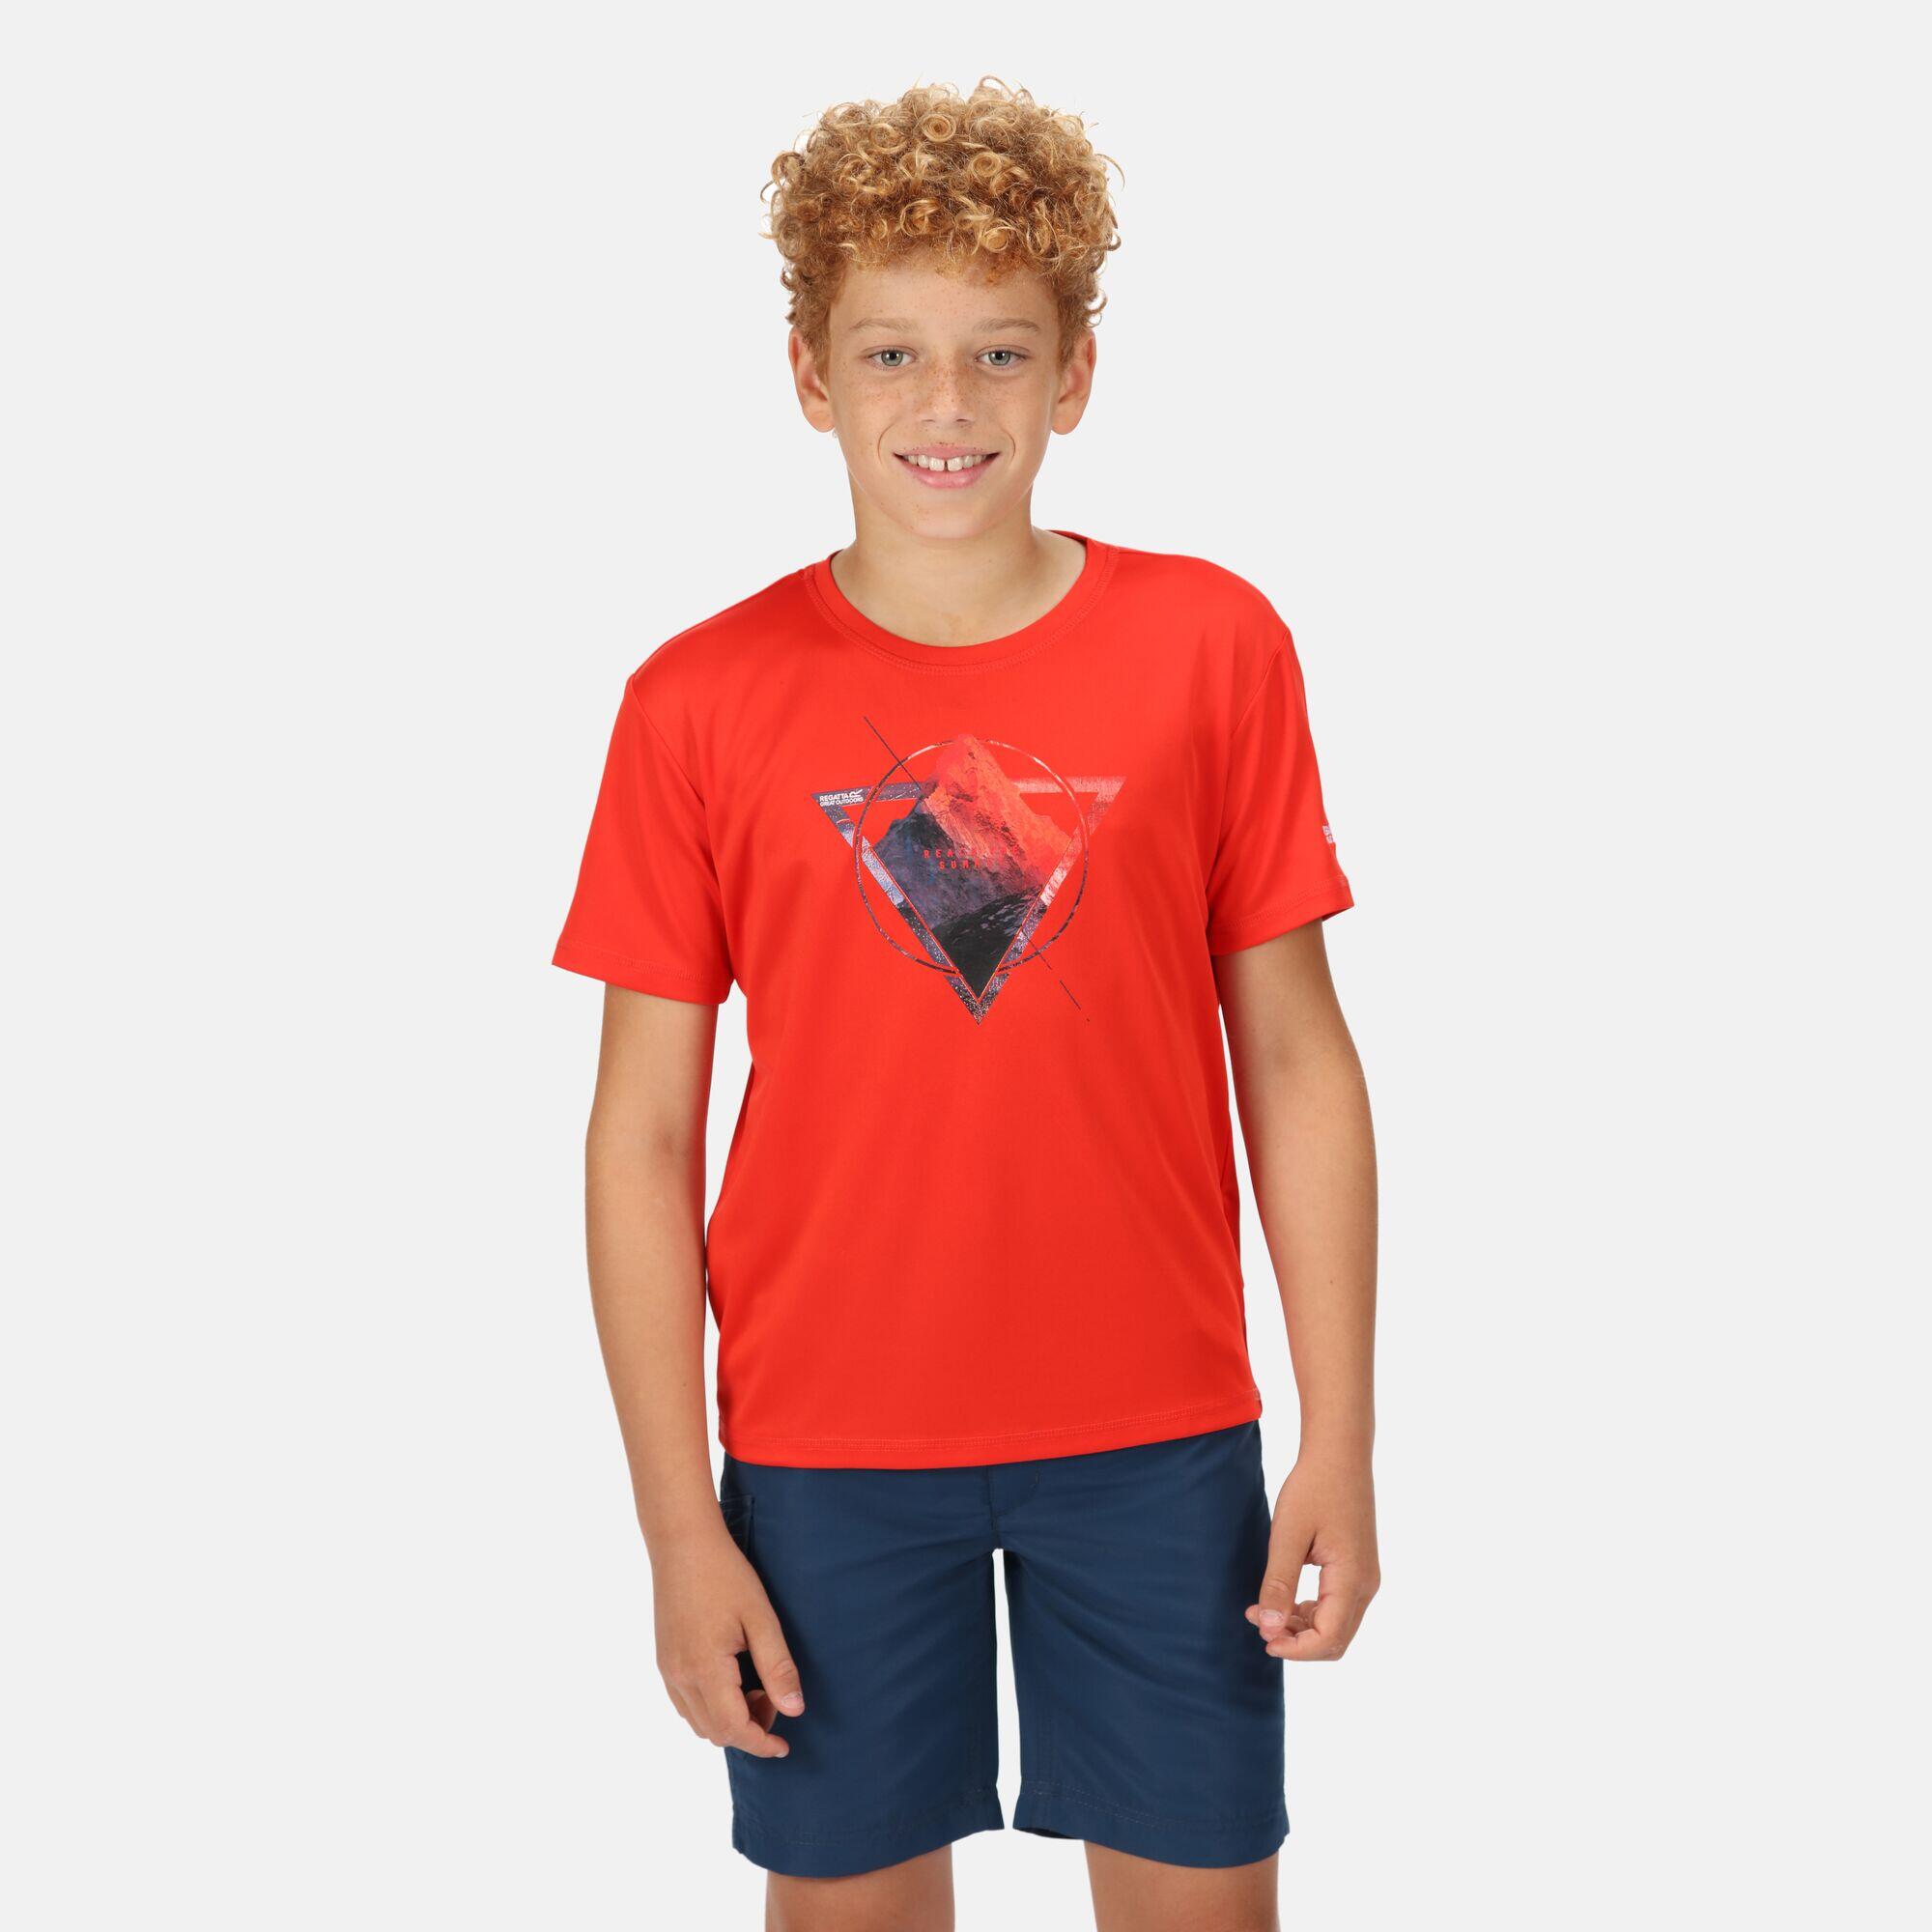 REGATTA Alvarado VI Kids Walking Short Sleeve T-Shirt - Fiery Red